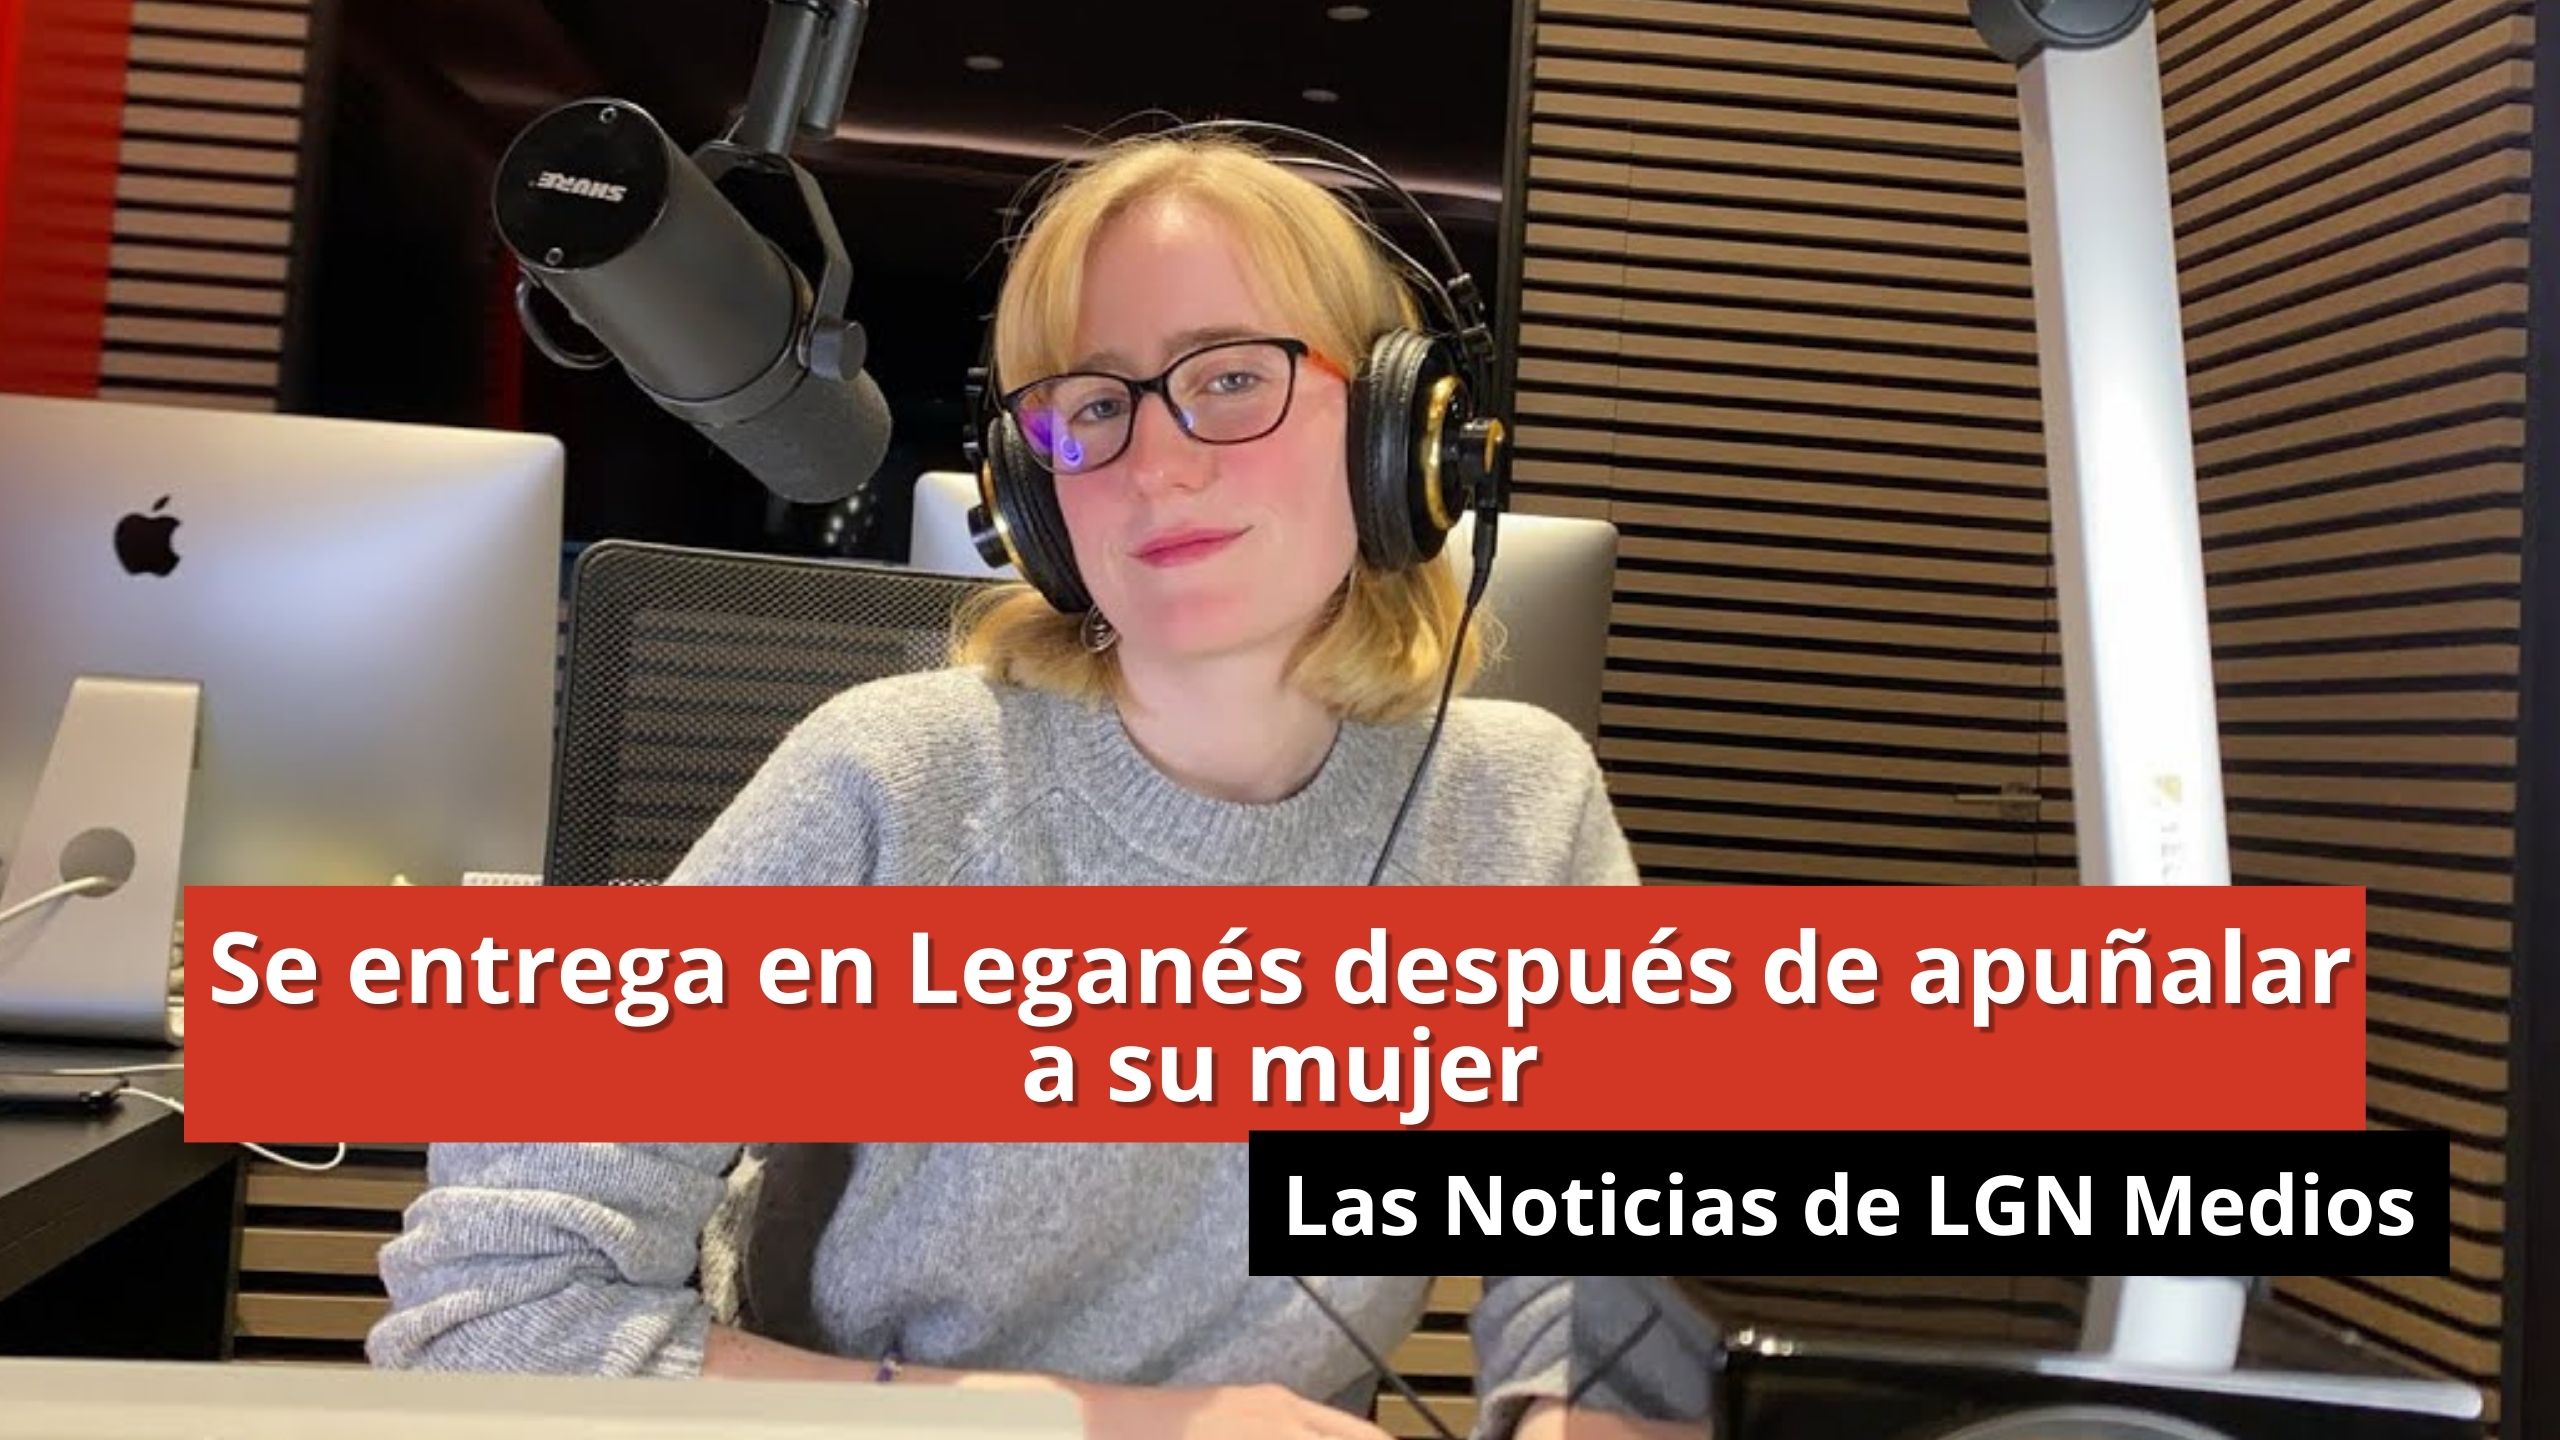 23/01/24 Se entrega en Leganés después de apuñalar a su mujer - Las Noticias de LGN Medios